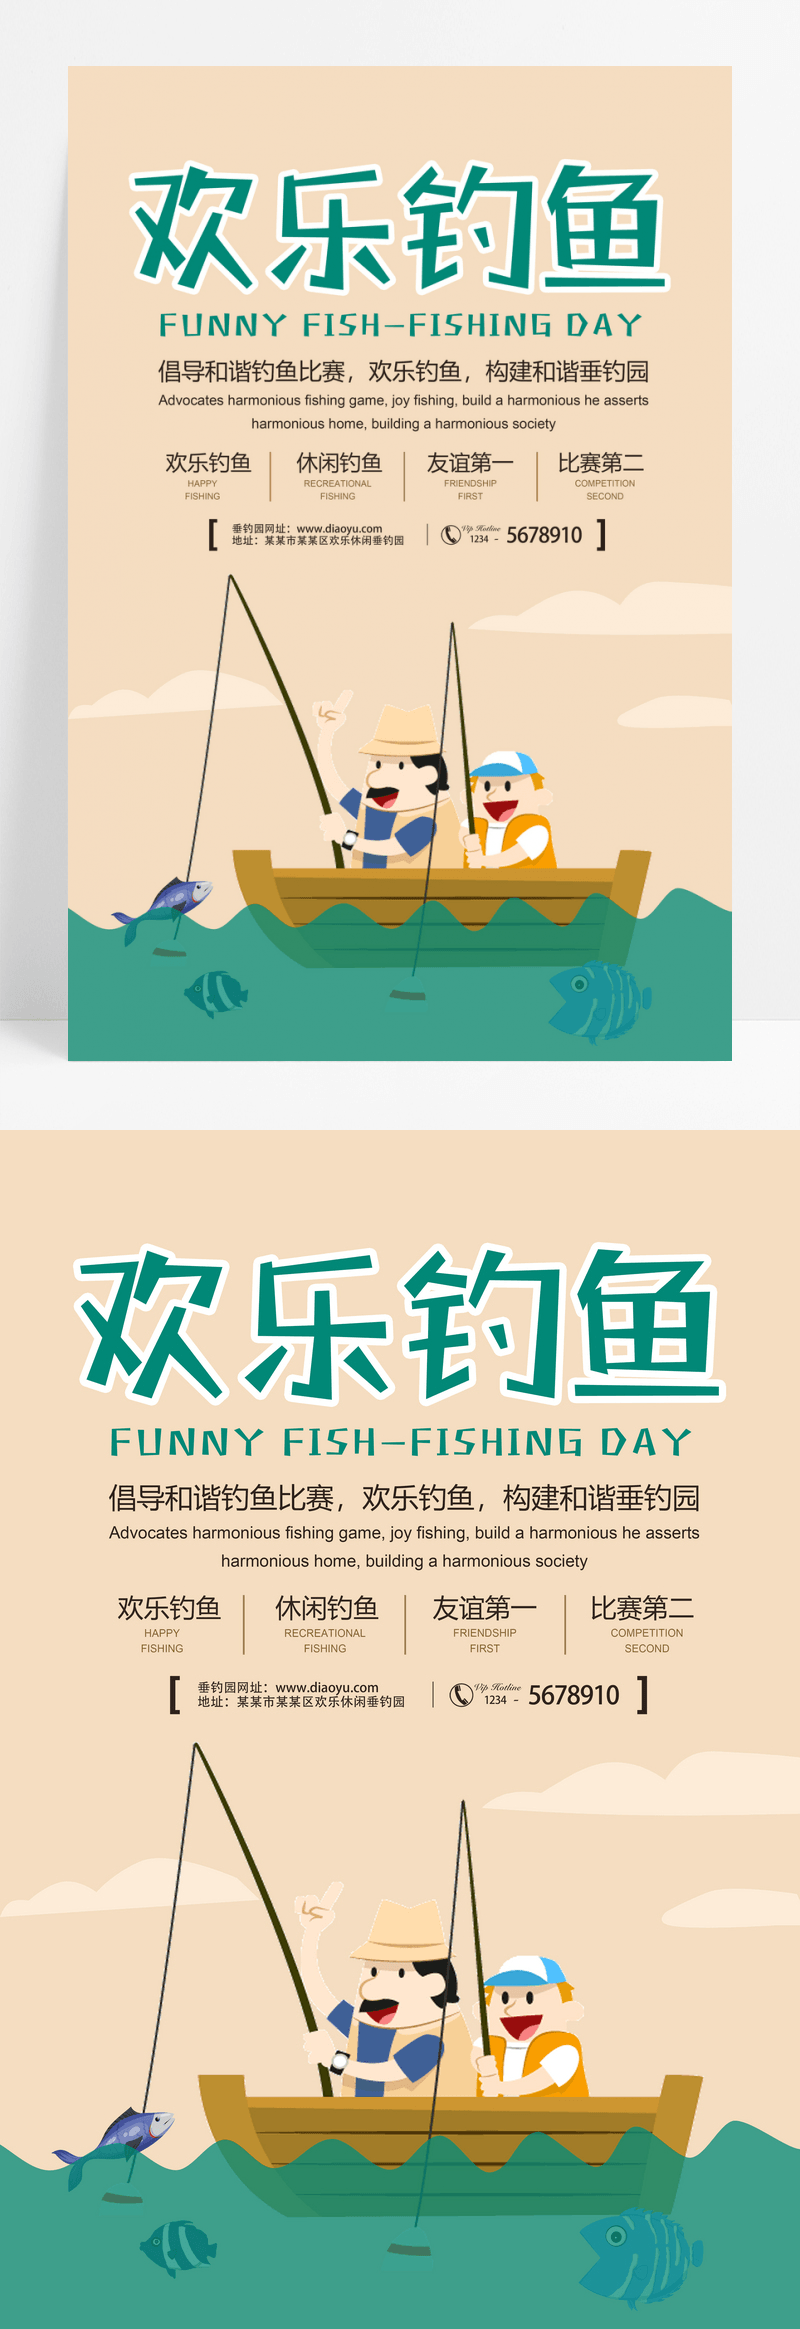 体育钓鱼运动活动宣传海报设计